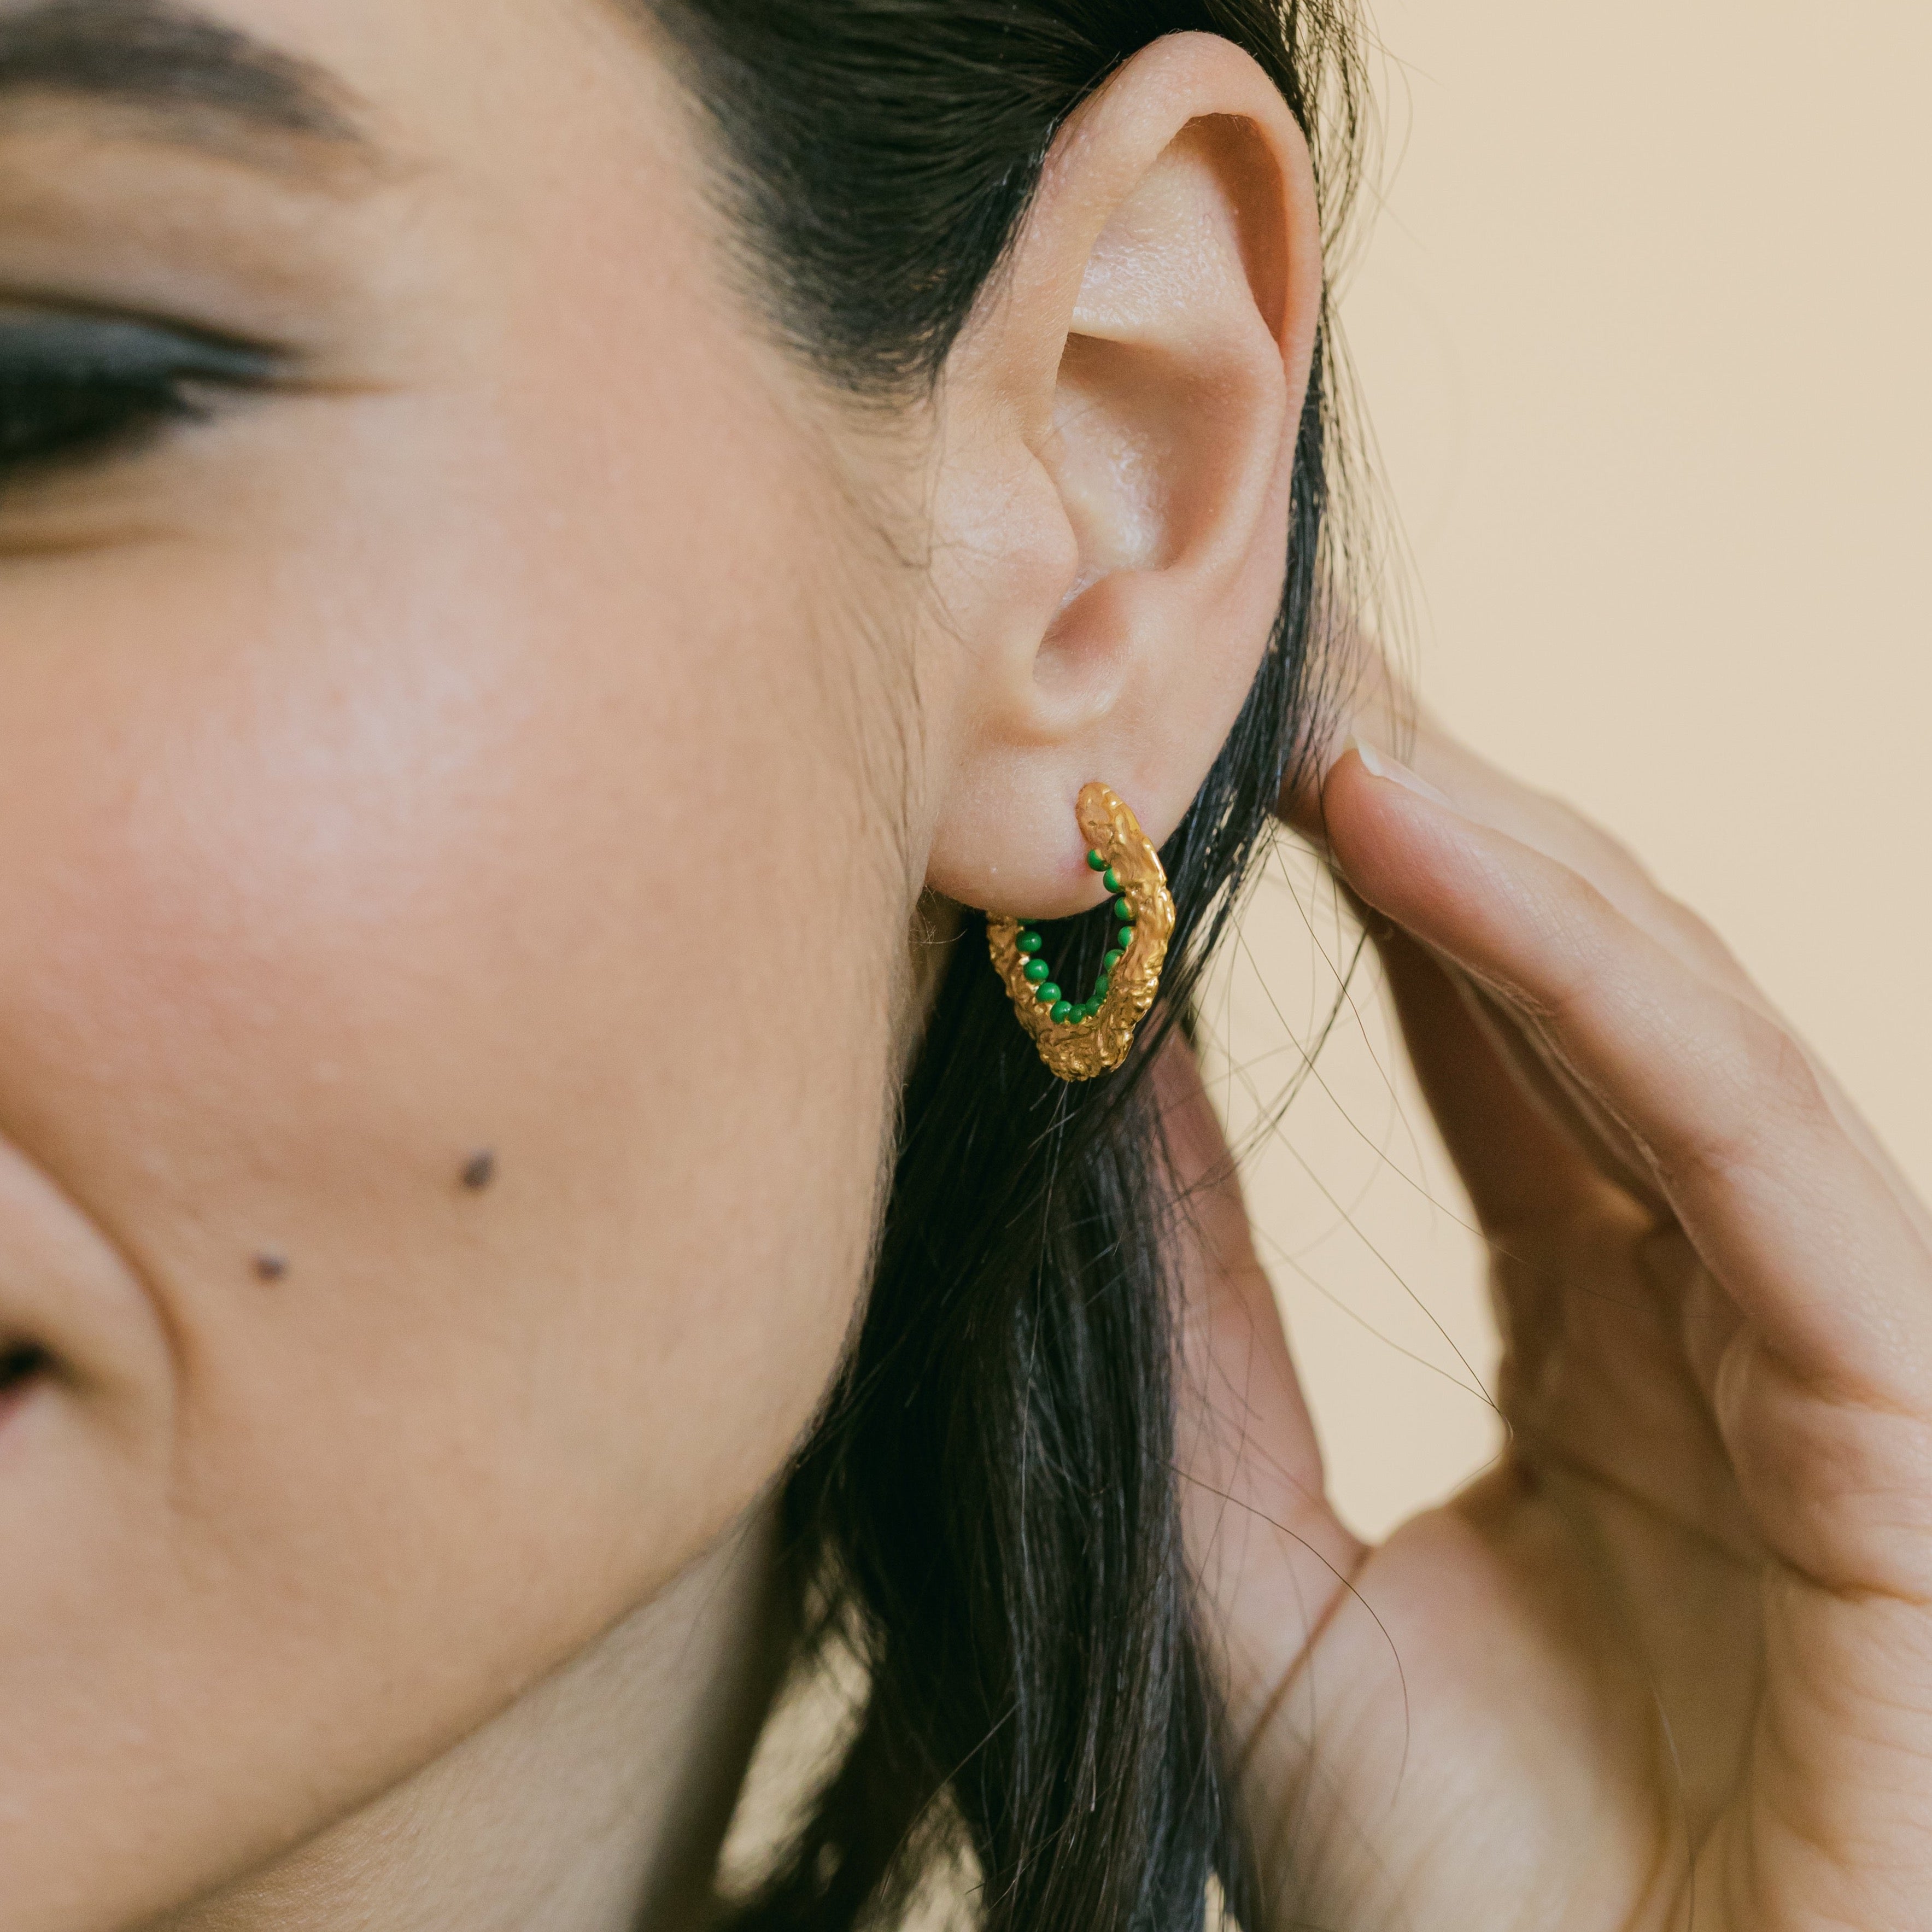 Crumpled Gold Hoop Earrings with Green Enamel - Eloise